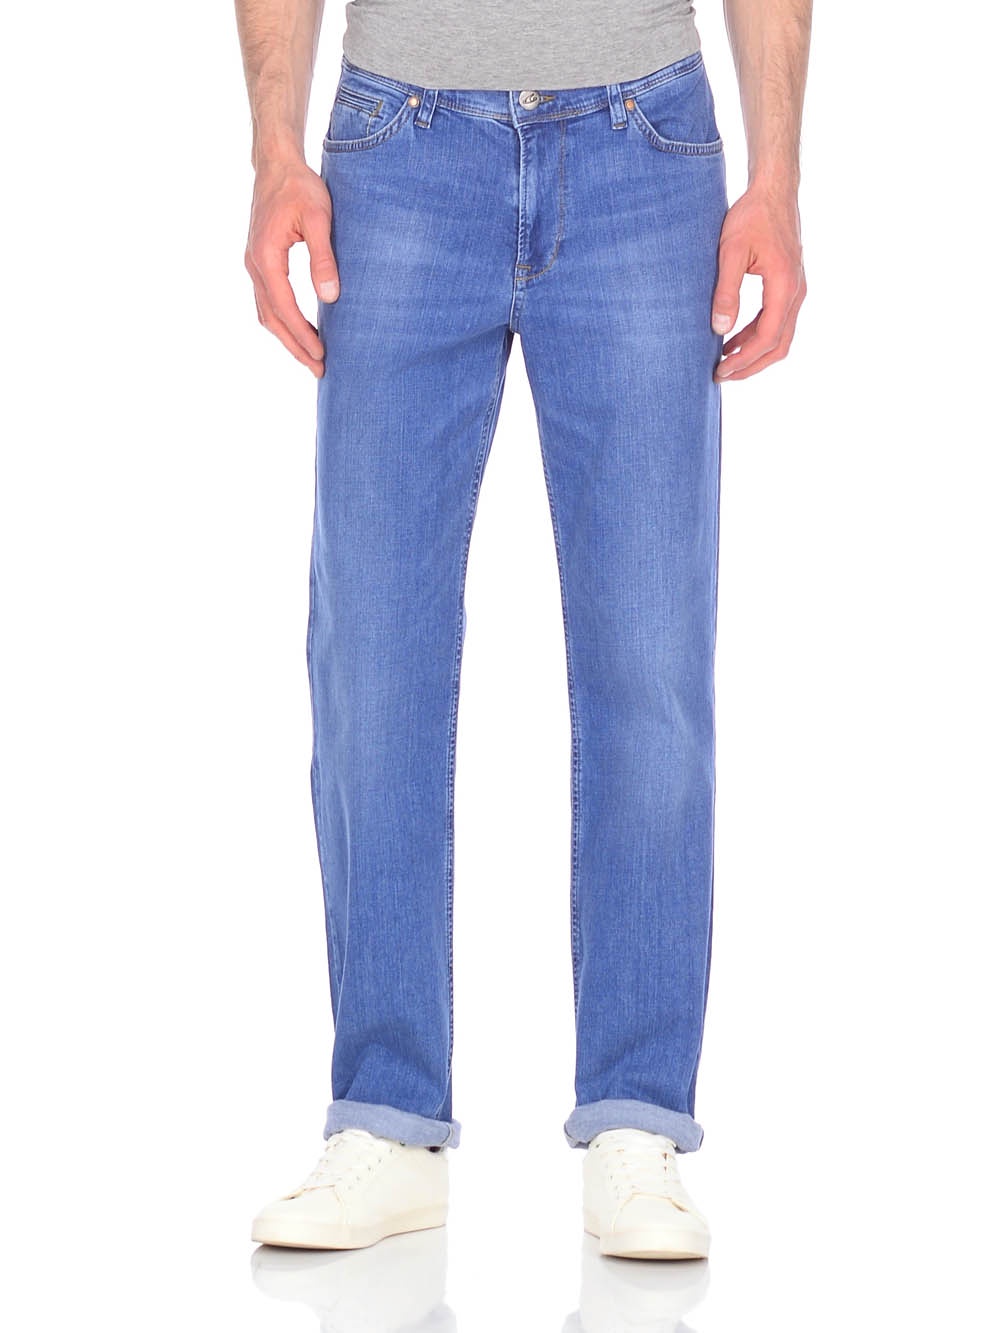 Голубые мужские джинсы купить. Джинсы Дайрос. Levis 501 синие мужские. Dairos gd50100012. Джинсы Дайрос модель 998.